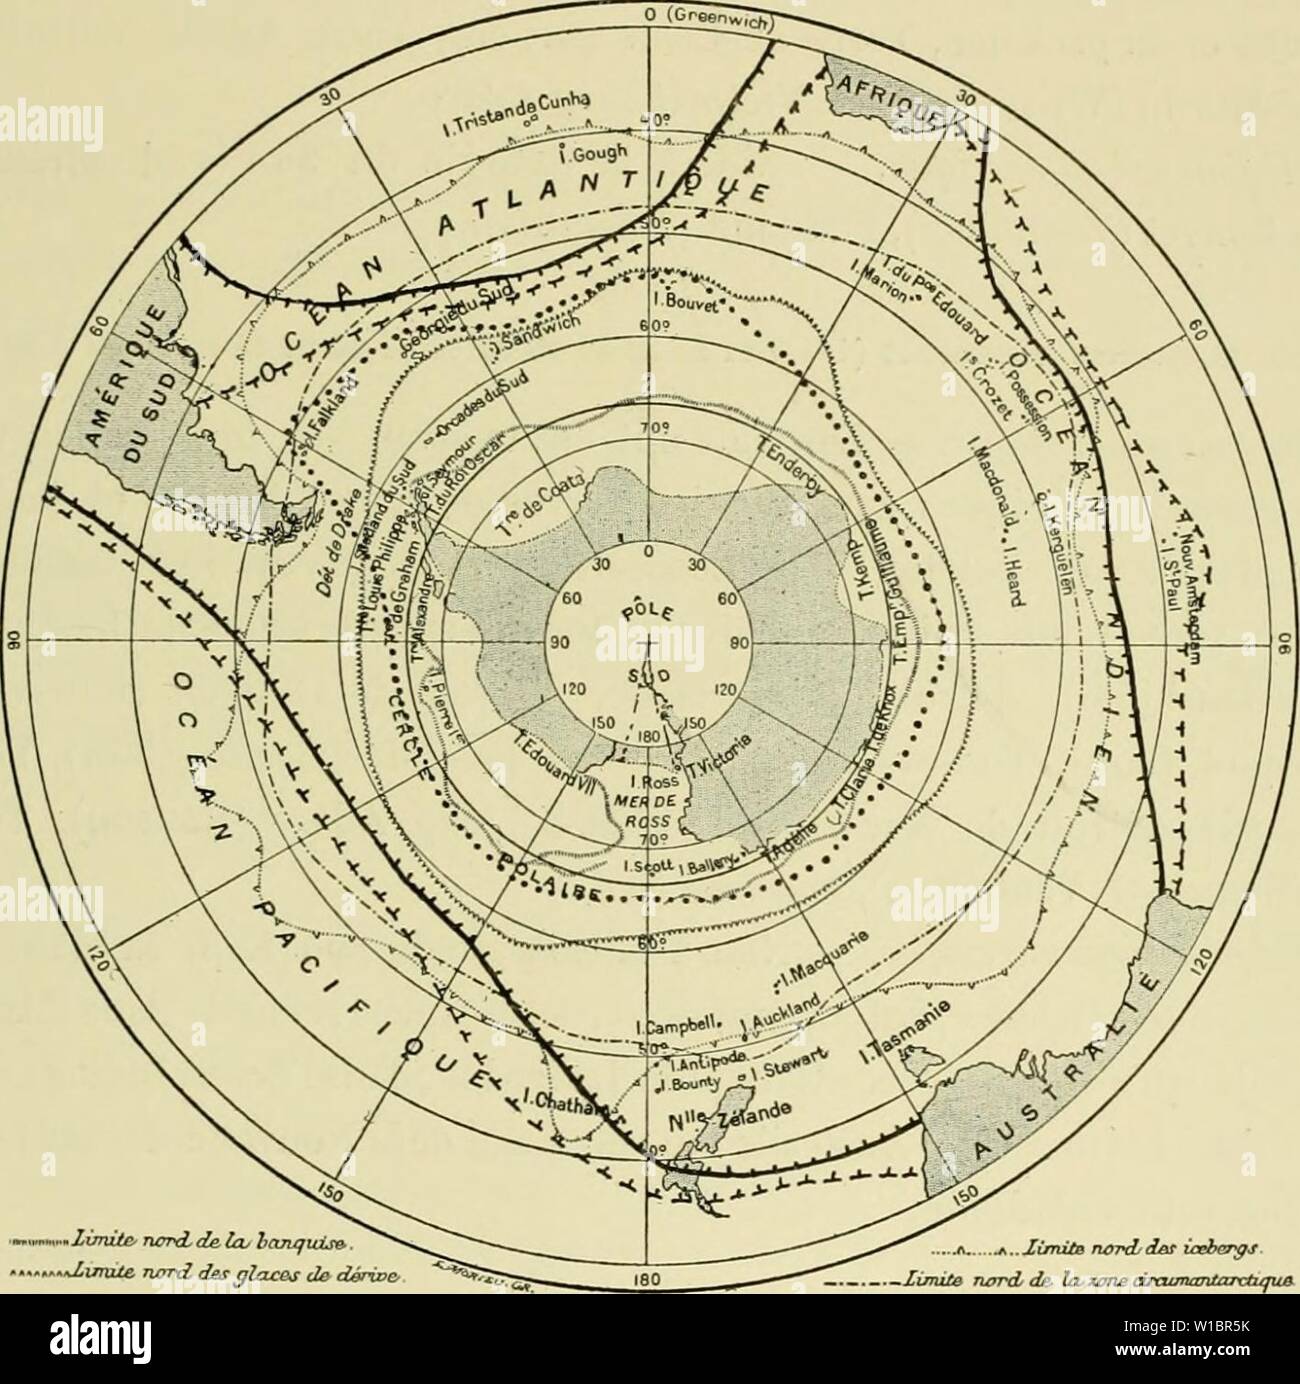 Archive image from page 448 of Deuxième expédition antarctique francaise (1908-1910). Deuxième expédition antarctique francaise (1908-1910) . deuximeexpdin1914fran Year: 1914  OISEA rx A NT A RC TIQUES. 191 ouest (le rAmériquo du Sud, mors du (lap, Iverguelon, sud de rocéan Indien, Australie Nouvelle-Zélande, île C-liathani. 23. Halobaena caerulea (1 8-9 16-17-32-42-44-55-56-59-65 66-68). ni&gt;fjion witarrfiqi(e. — m'33' S., 22°88' W. (Bruce), GloS. et 1 lO' W. (Gain). liri/lon suhanfarcl/f/HO. — Mers du Sud jusqu'au 10°. Nids sur l'ile    •.-rXinvUe narxZ des qIclcb d& dérioe- ji f...XimiiB Stock Photo